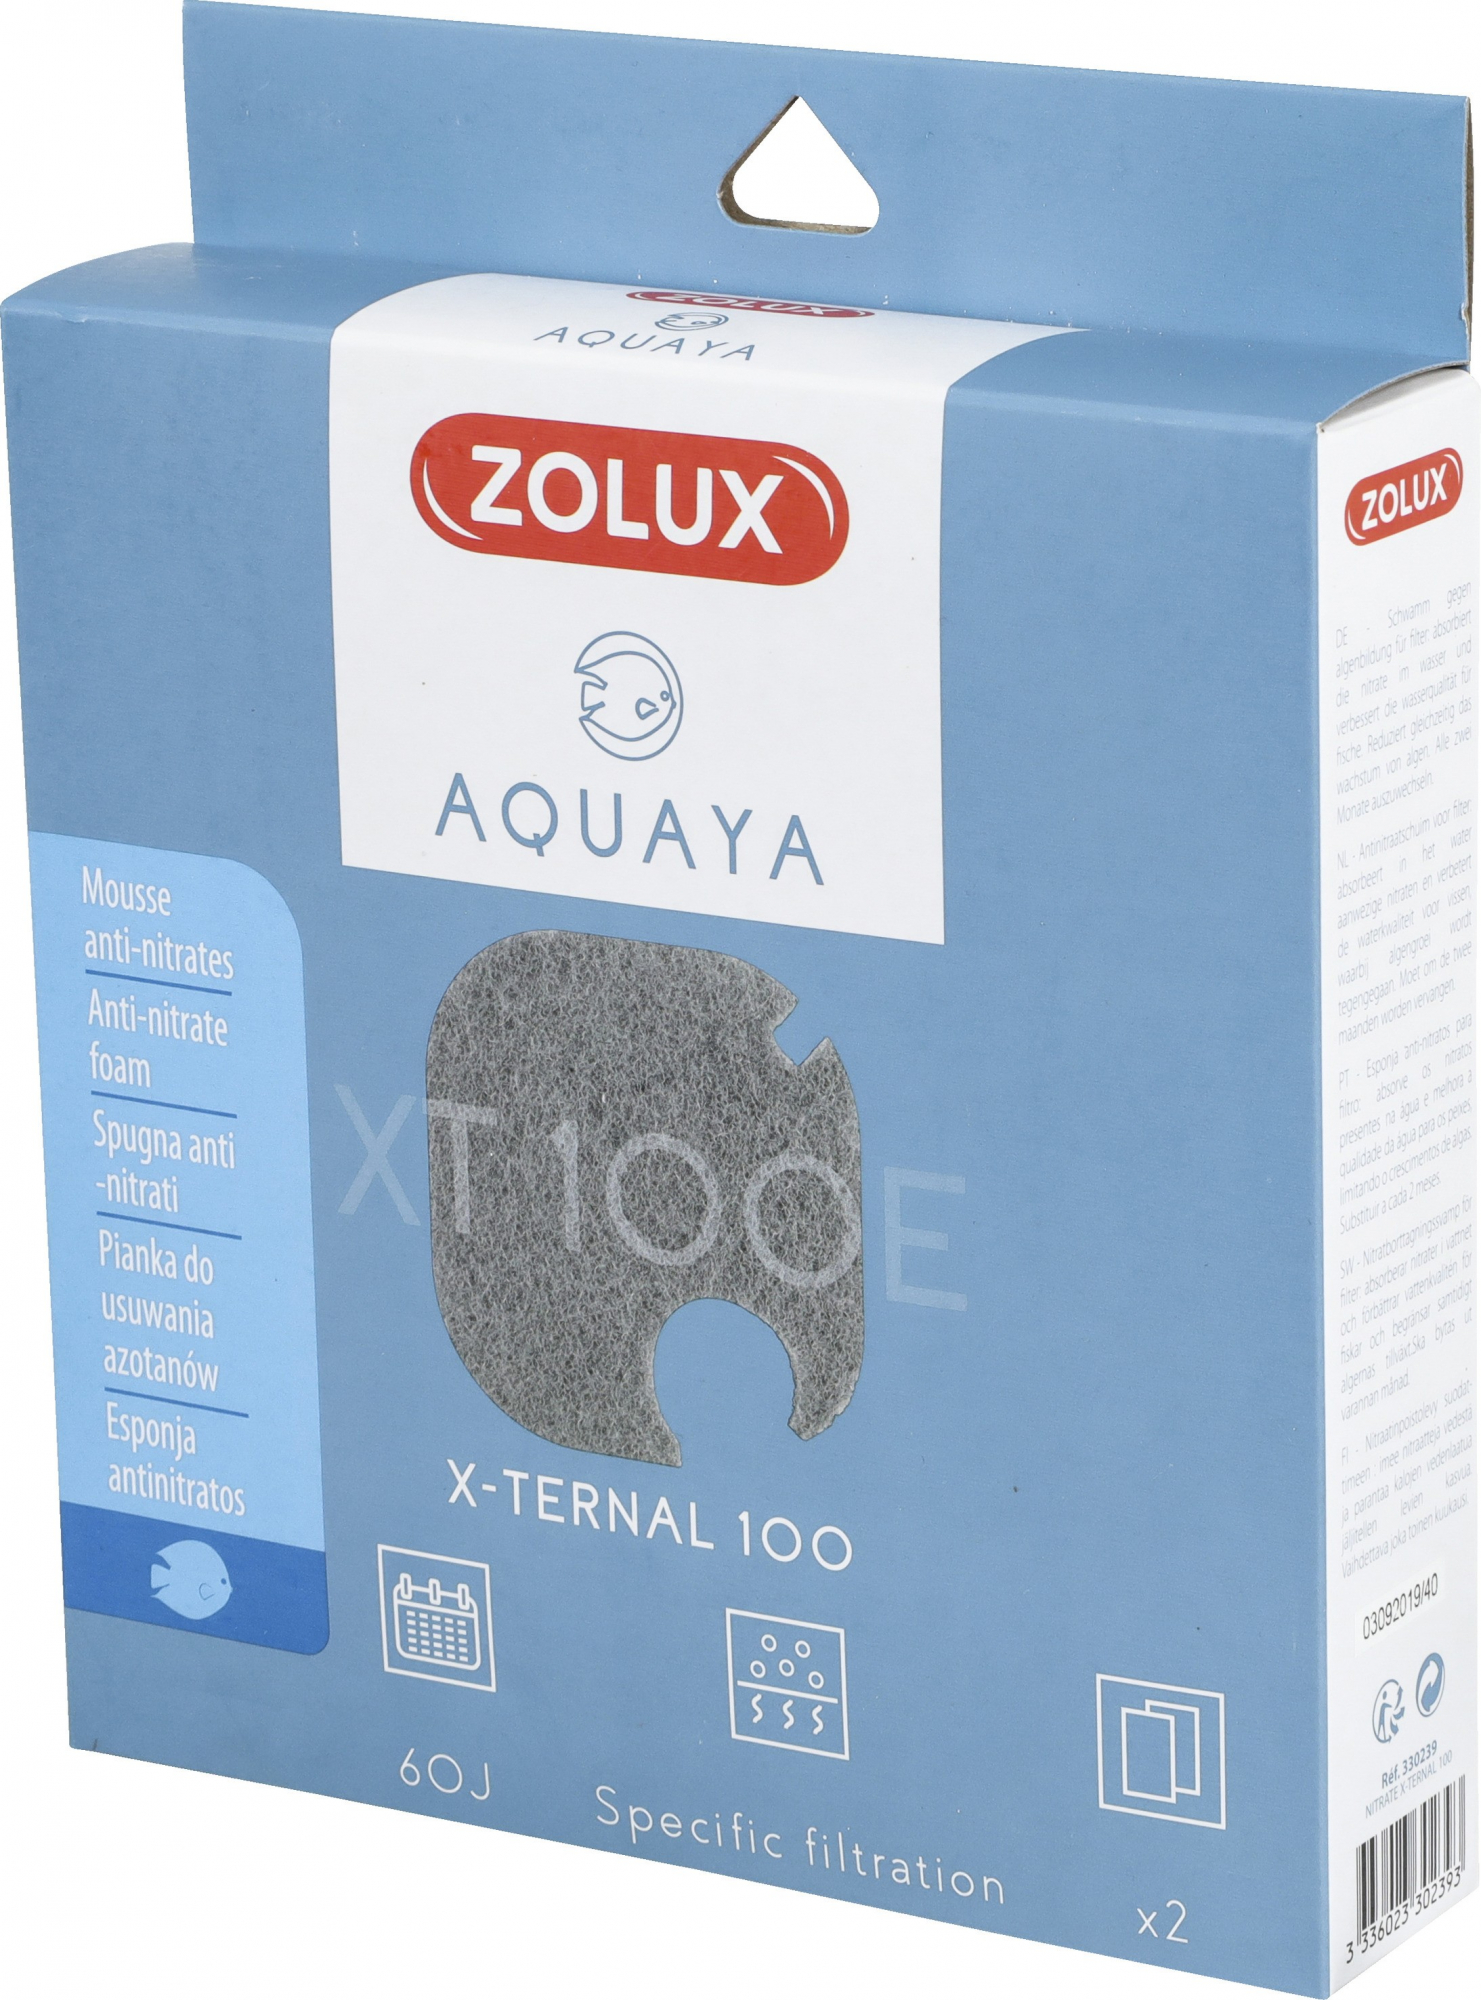 Mousse anti-nitrate pour filtre Xternal Aquaya